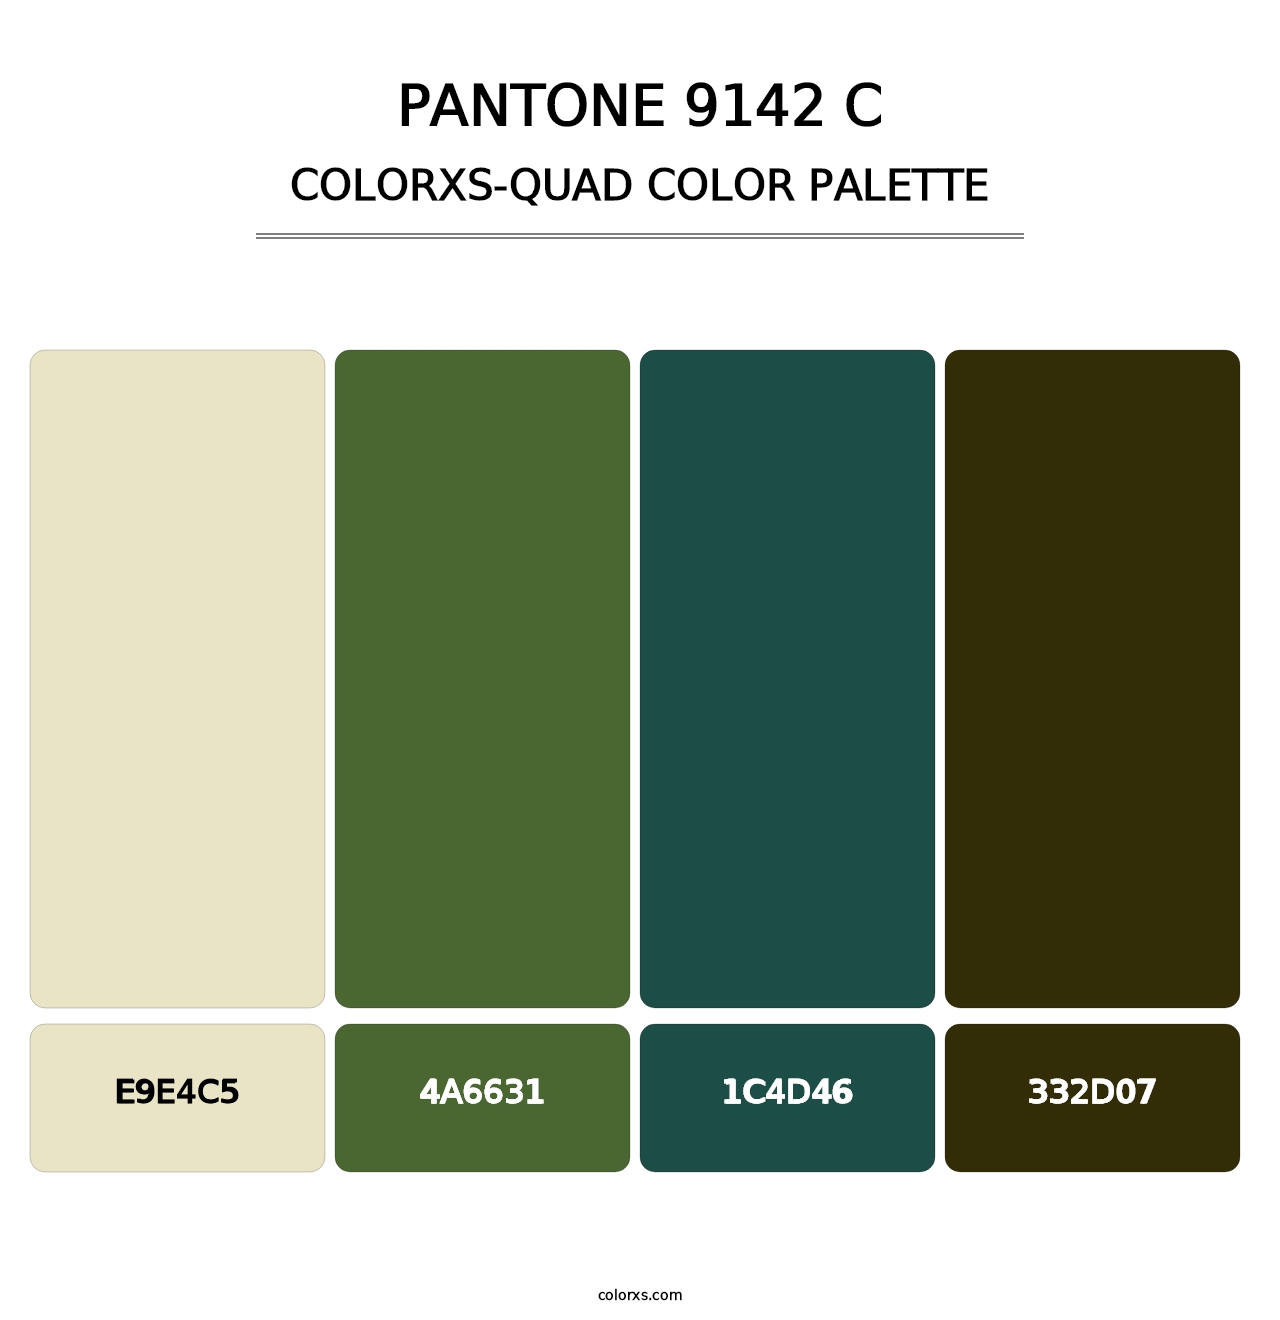 PANTONE 9142 C - Colorxs Quad Palette